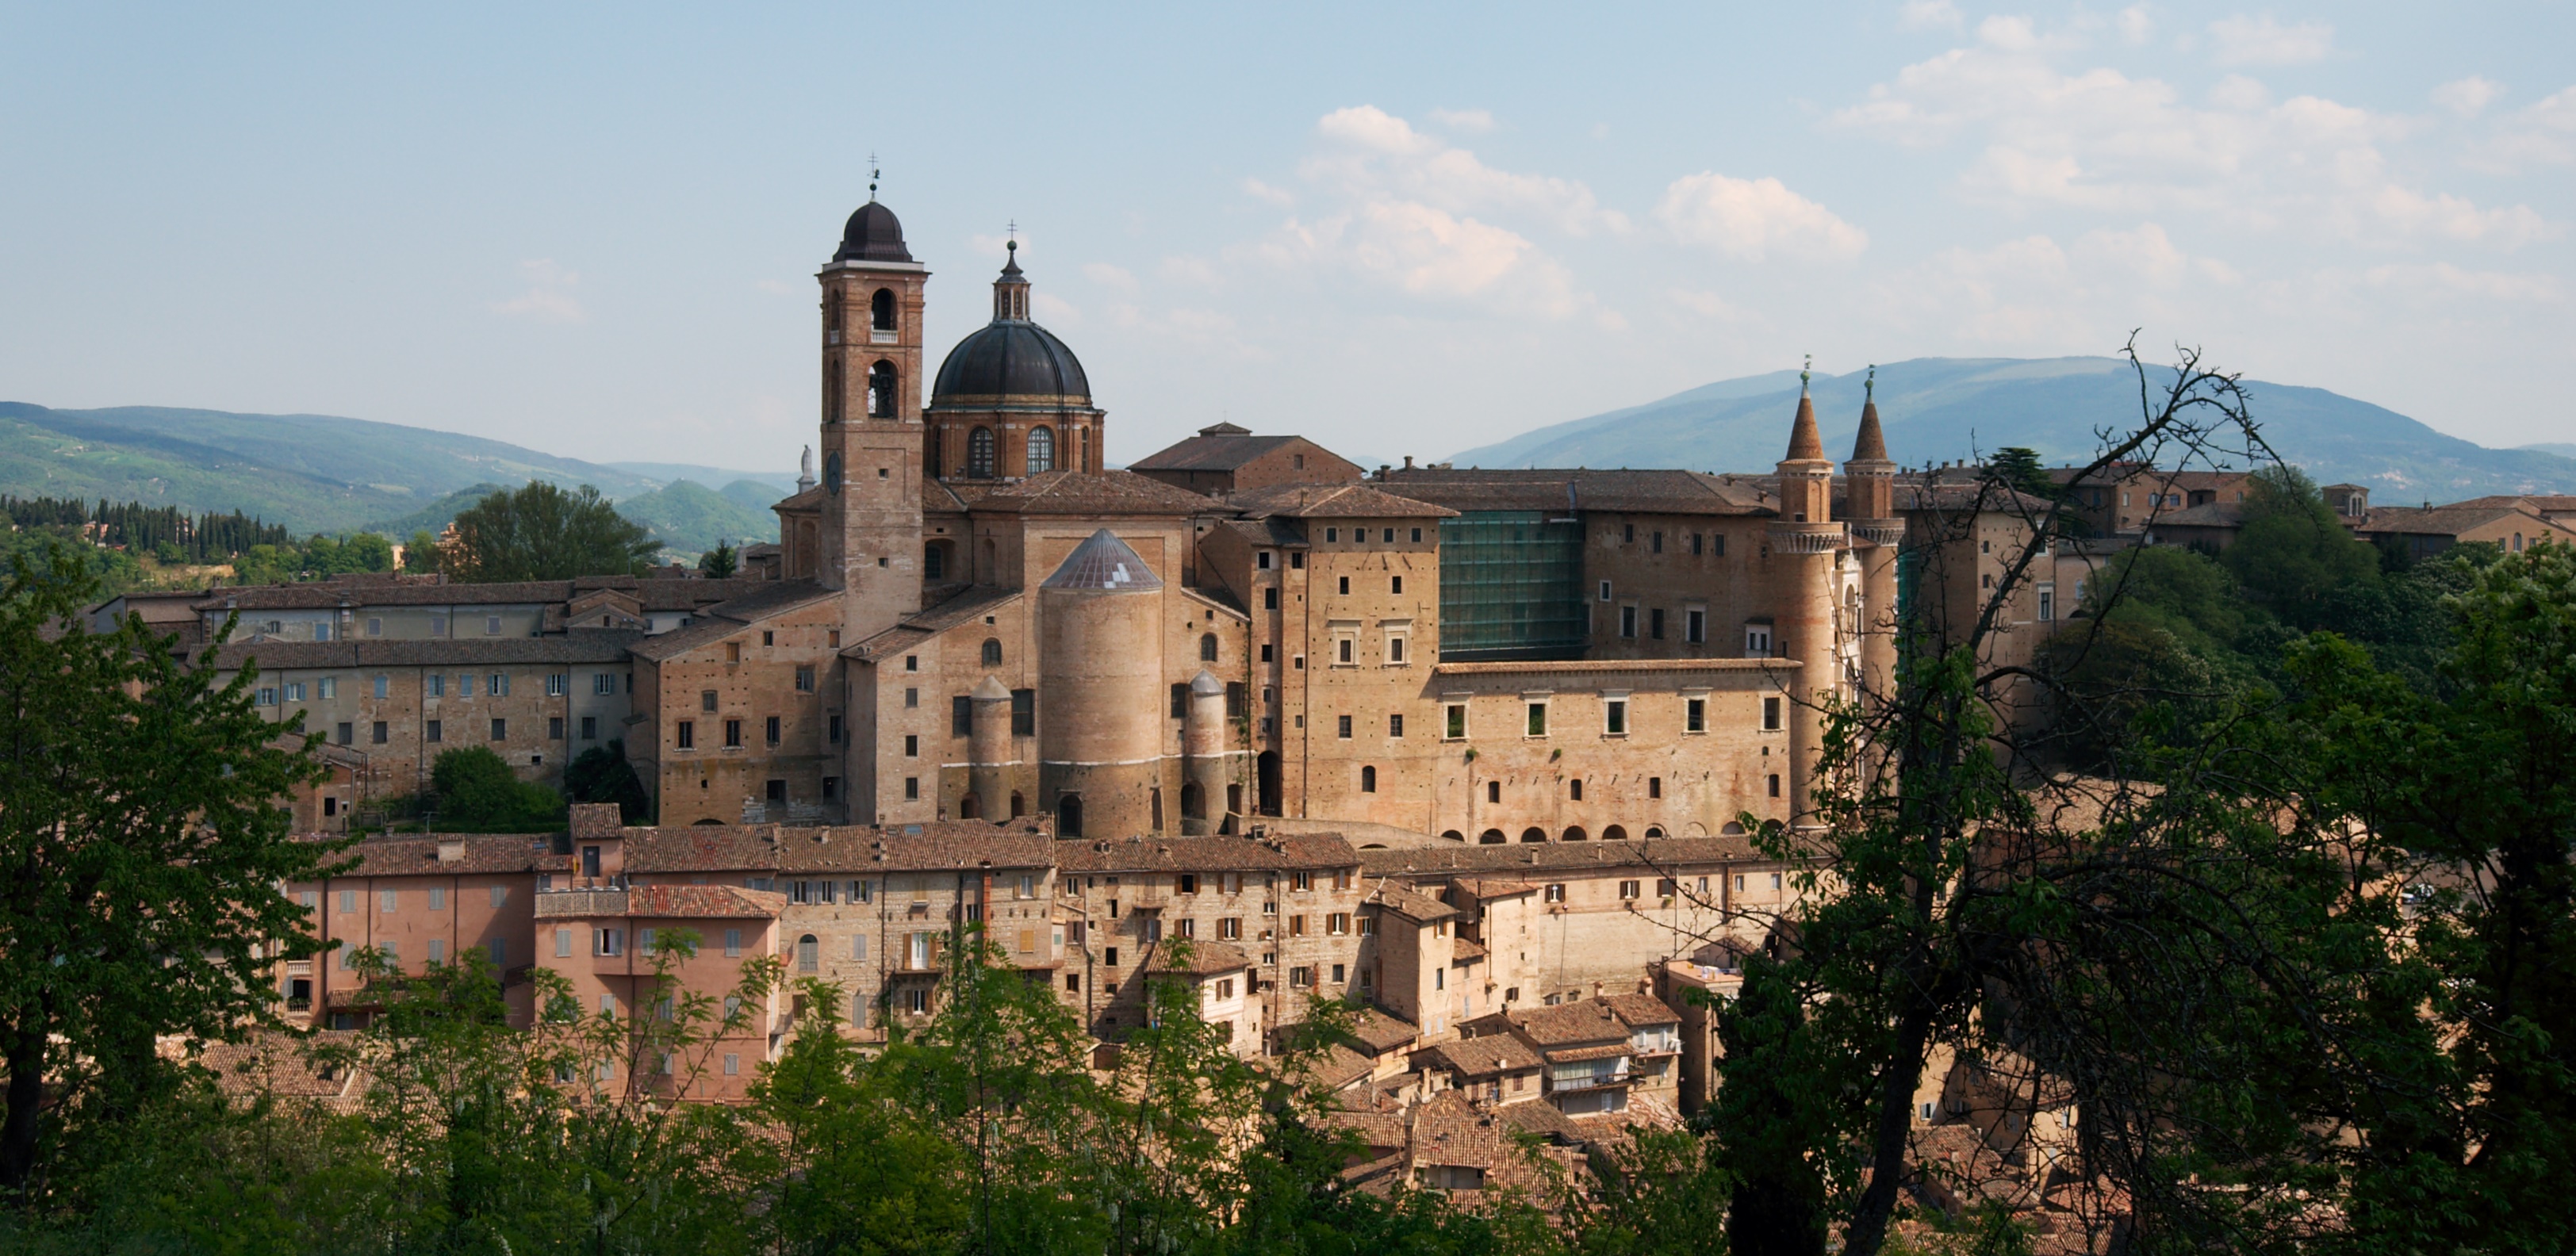 Urbino palace and village